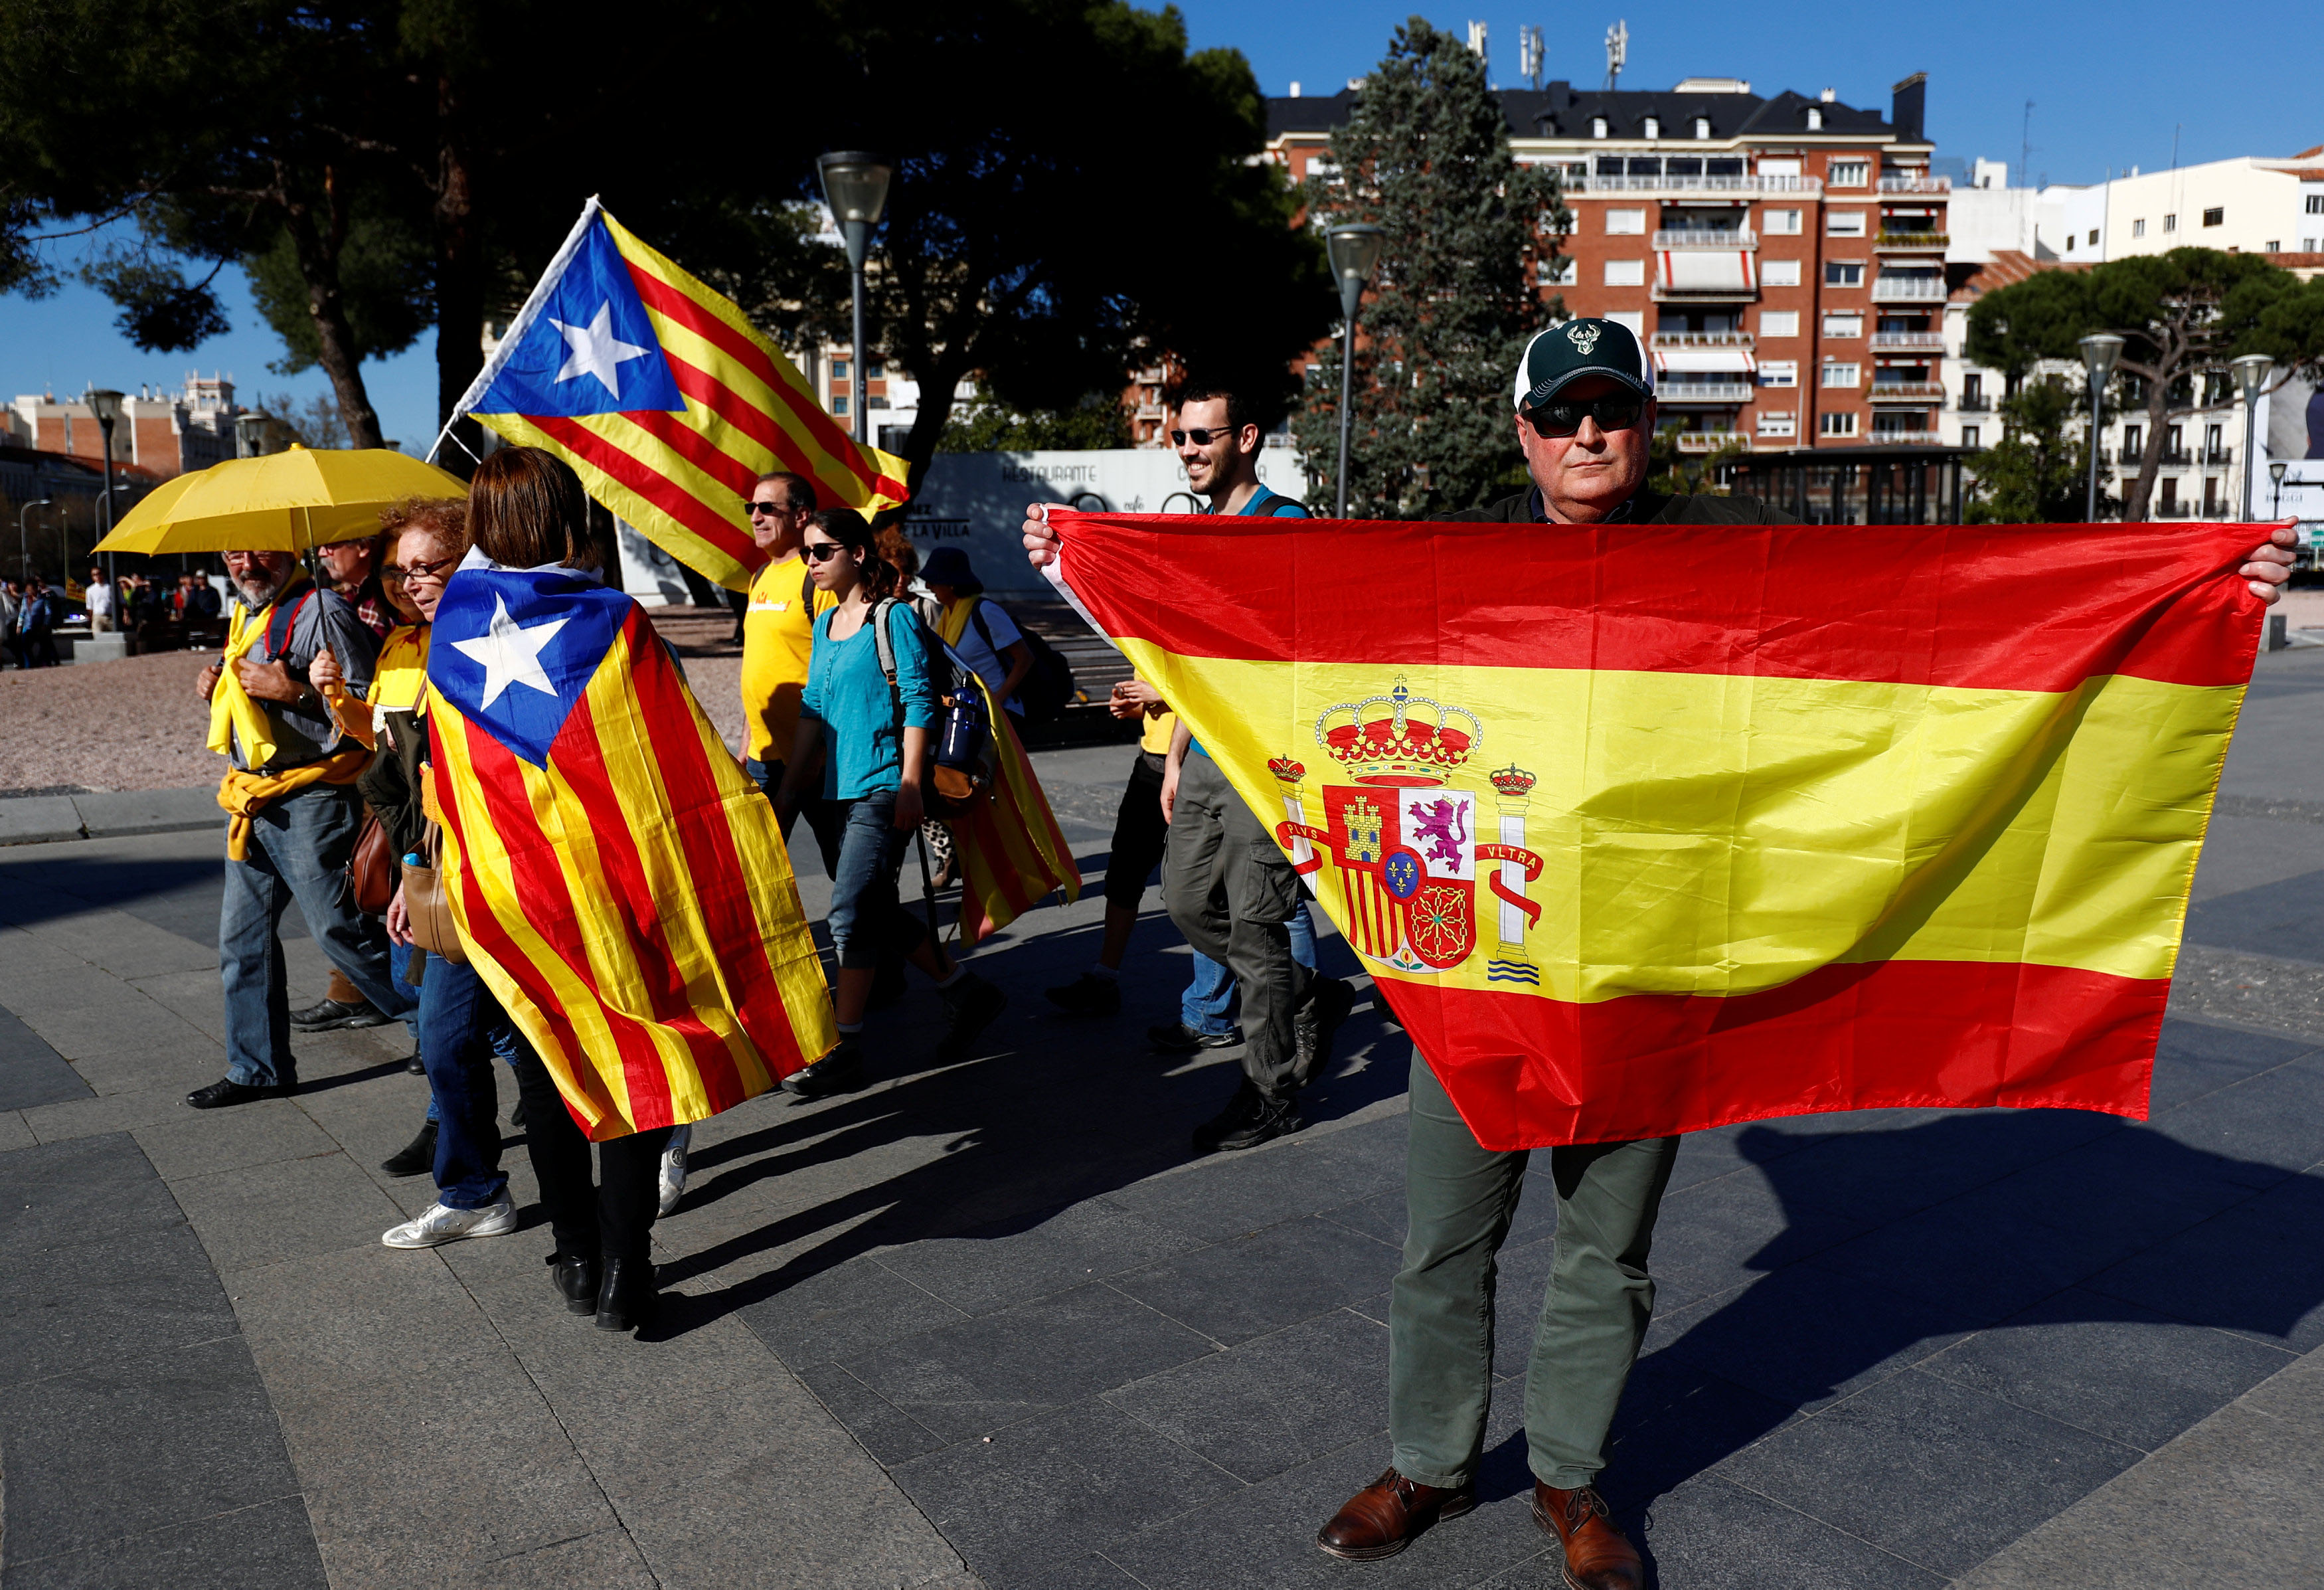 Español y catalán - Español y catalán juntos por el no